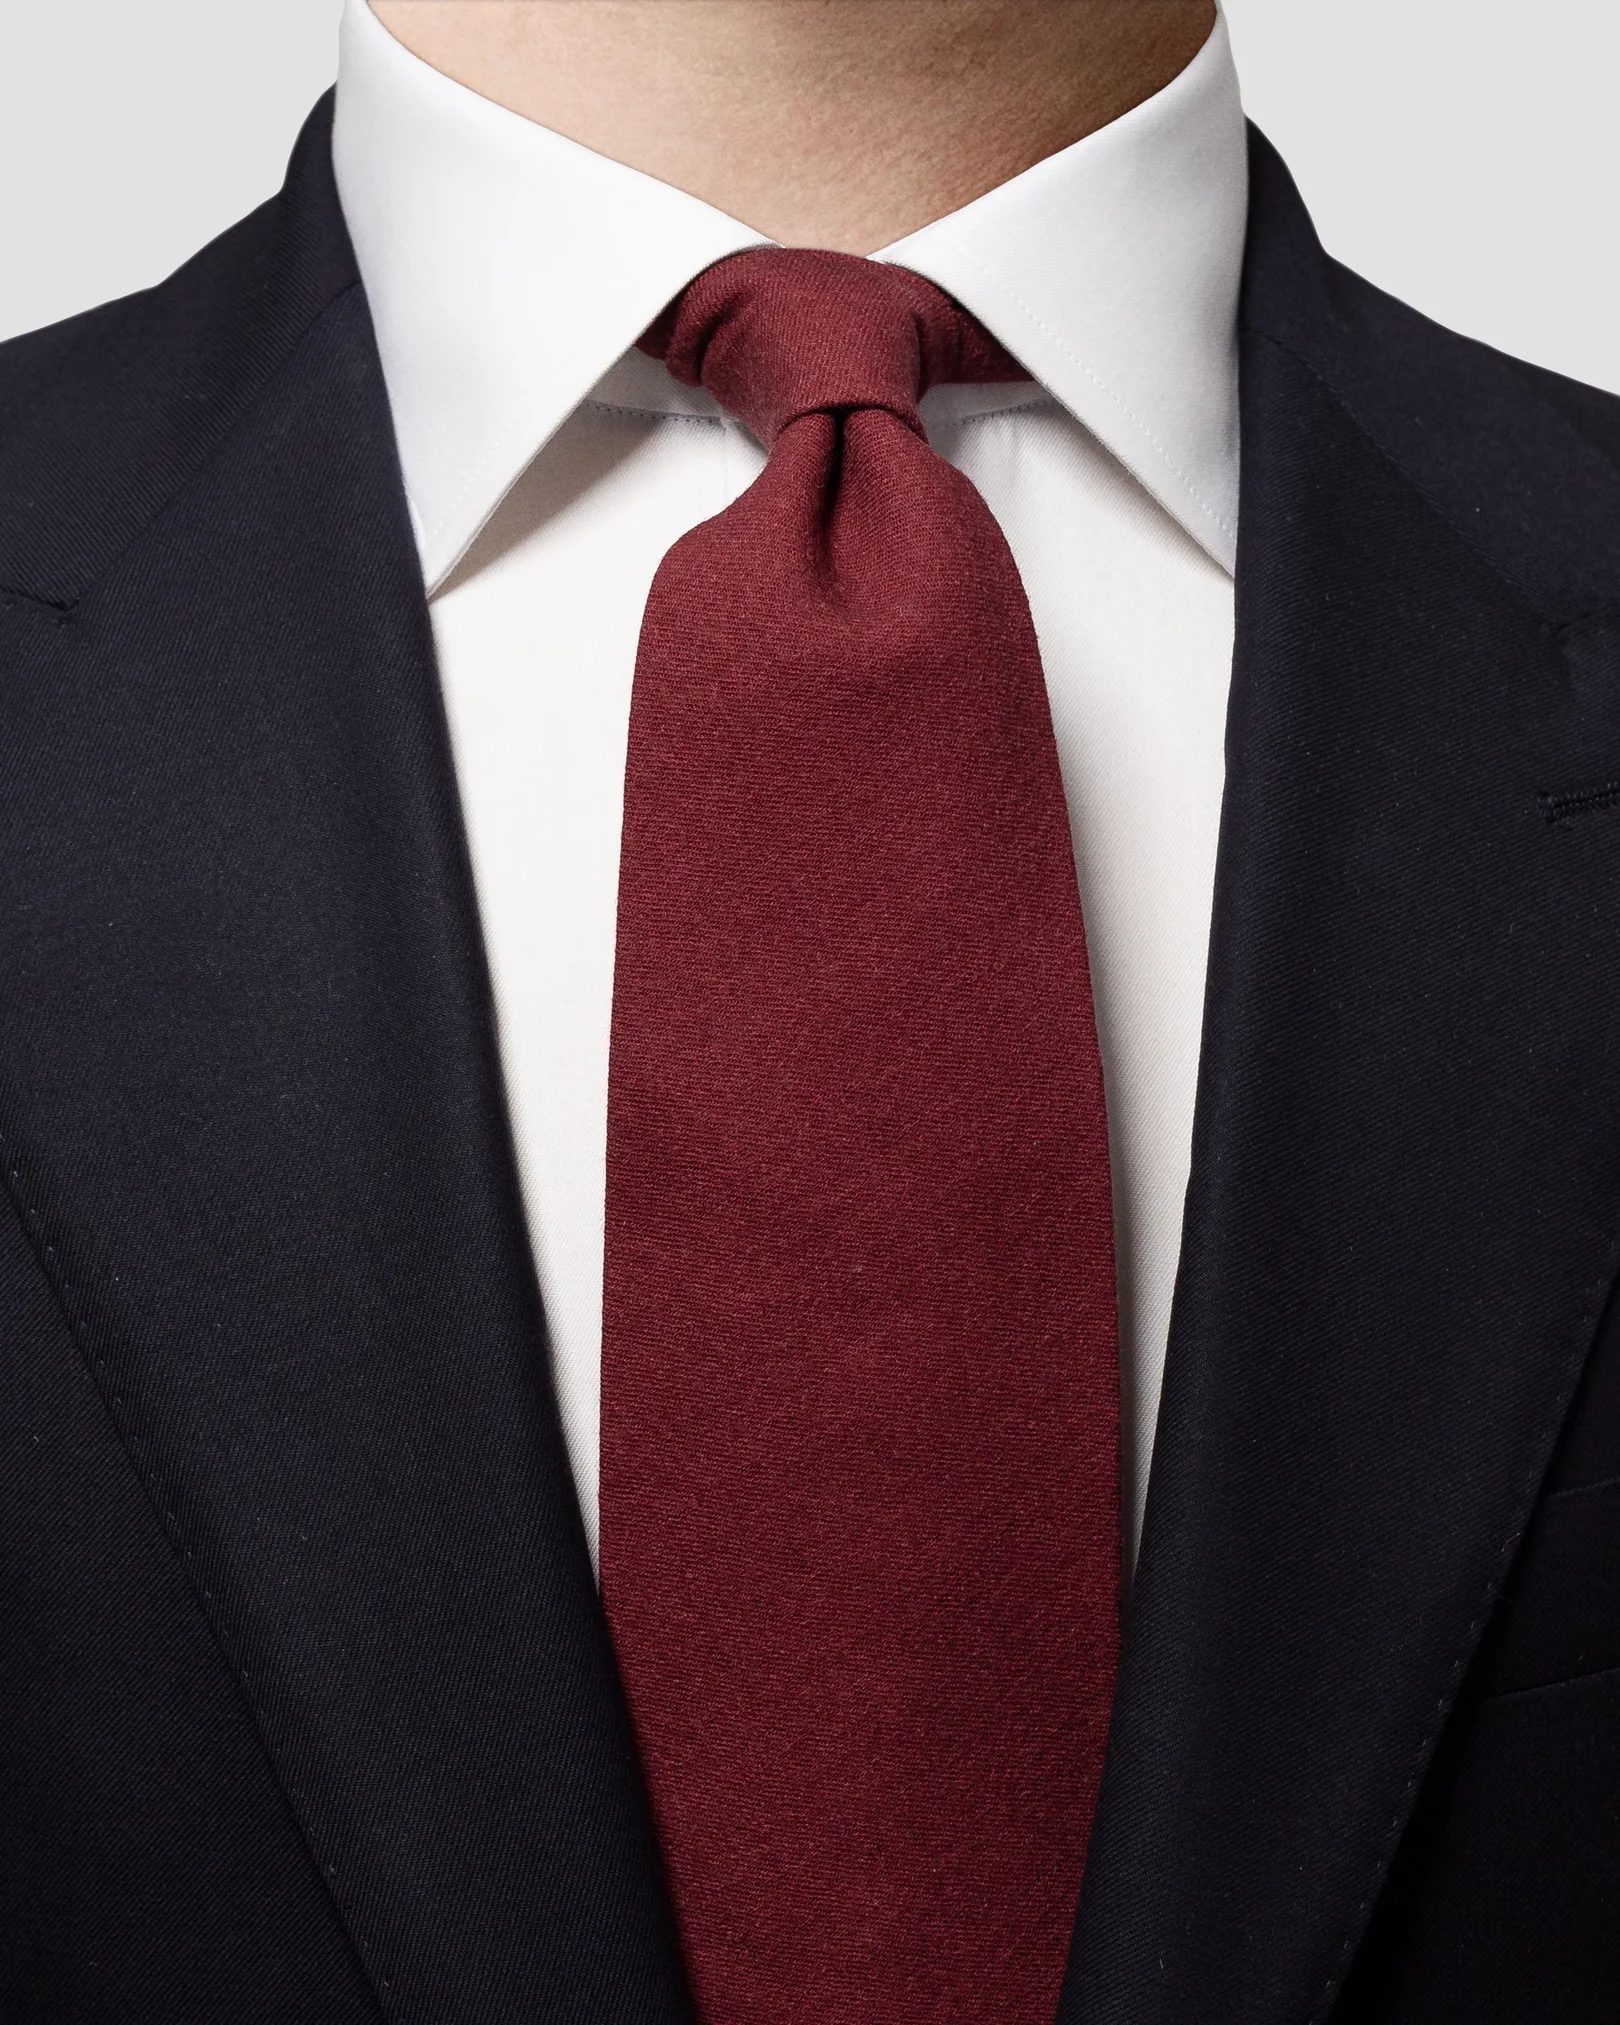 Eton - crimson red wool tie